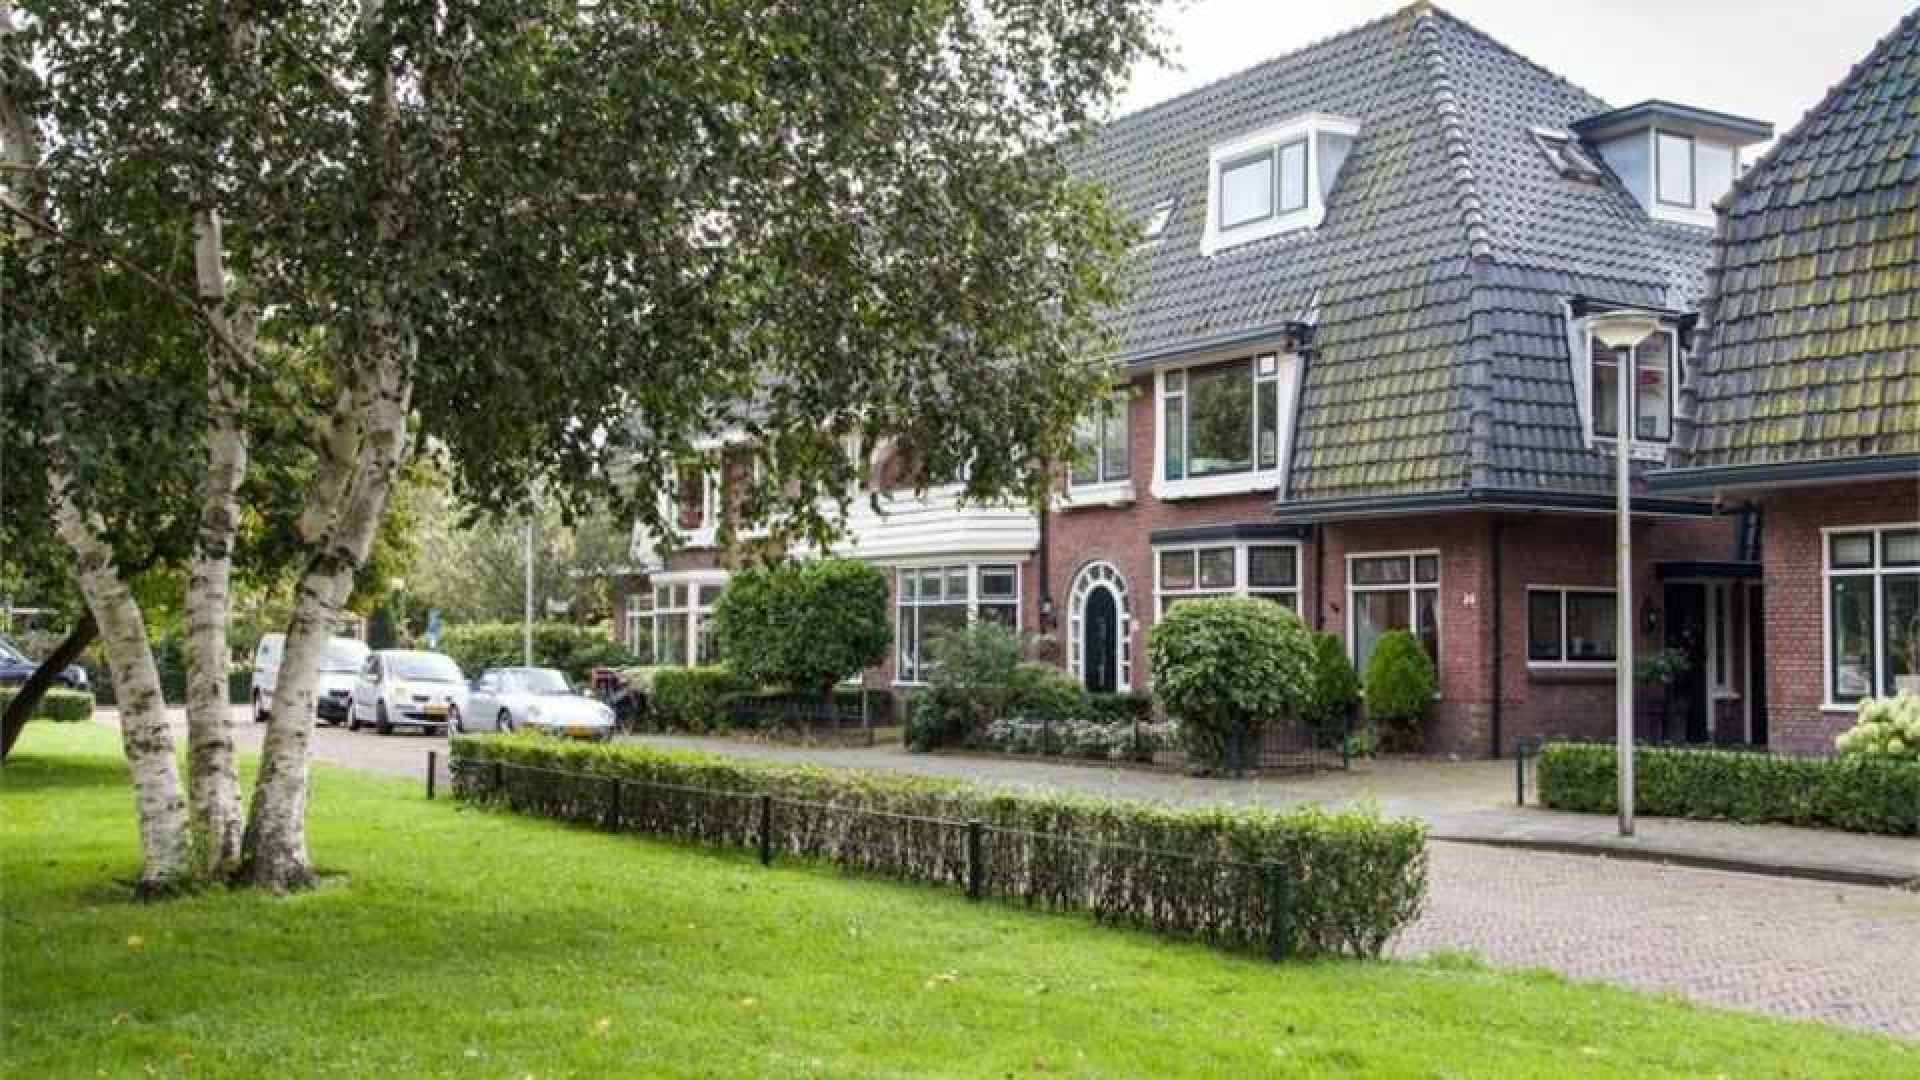 Alberto Stegeman koopt uit eigen zak voor bijna 1 miljoen villa in Heemstede. Zie foto's 20